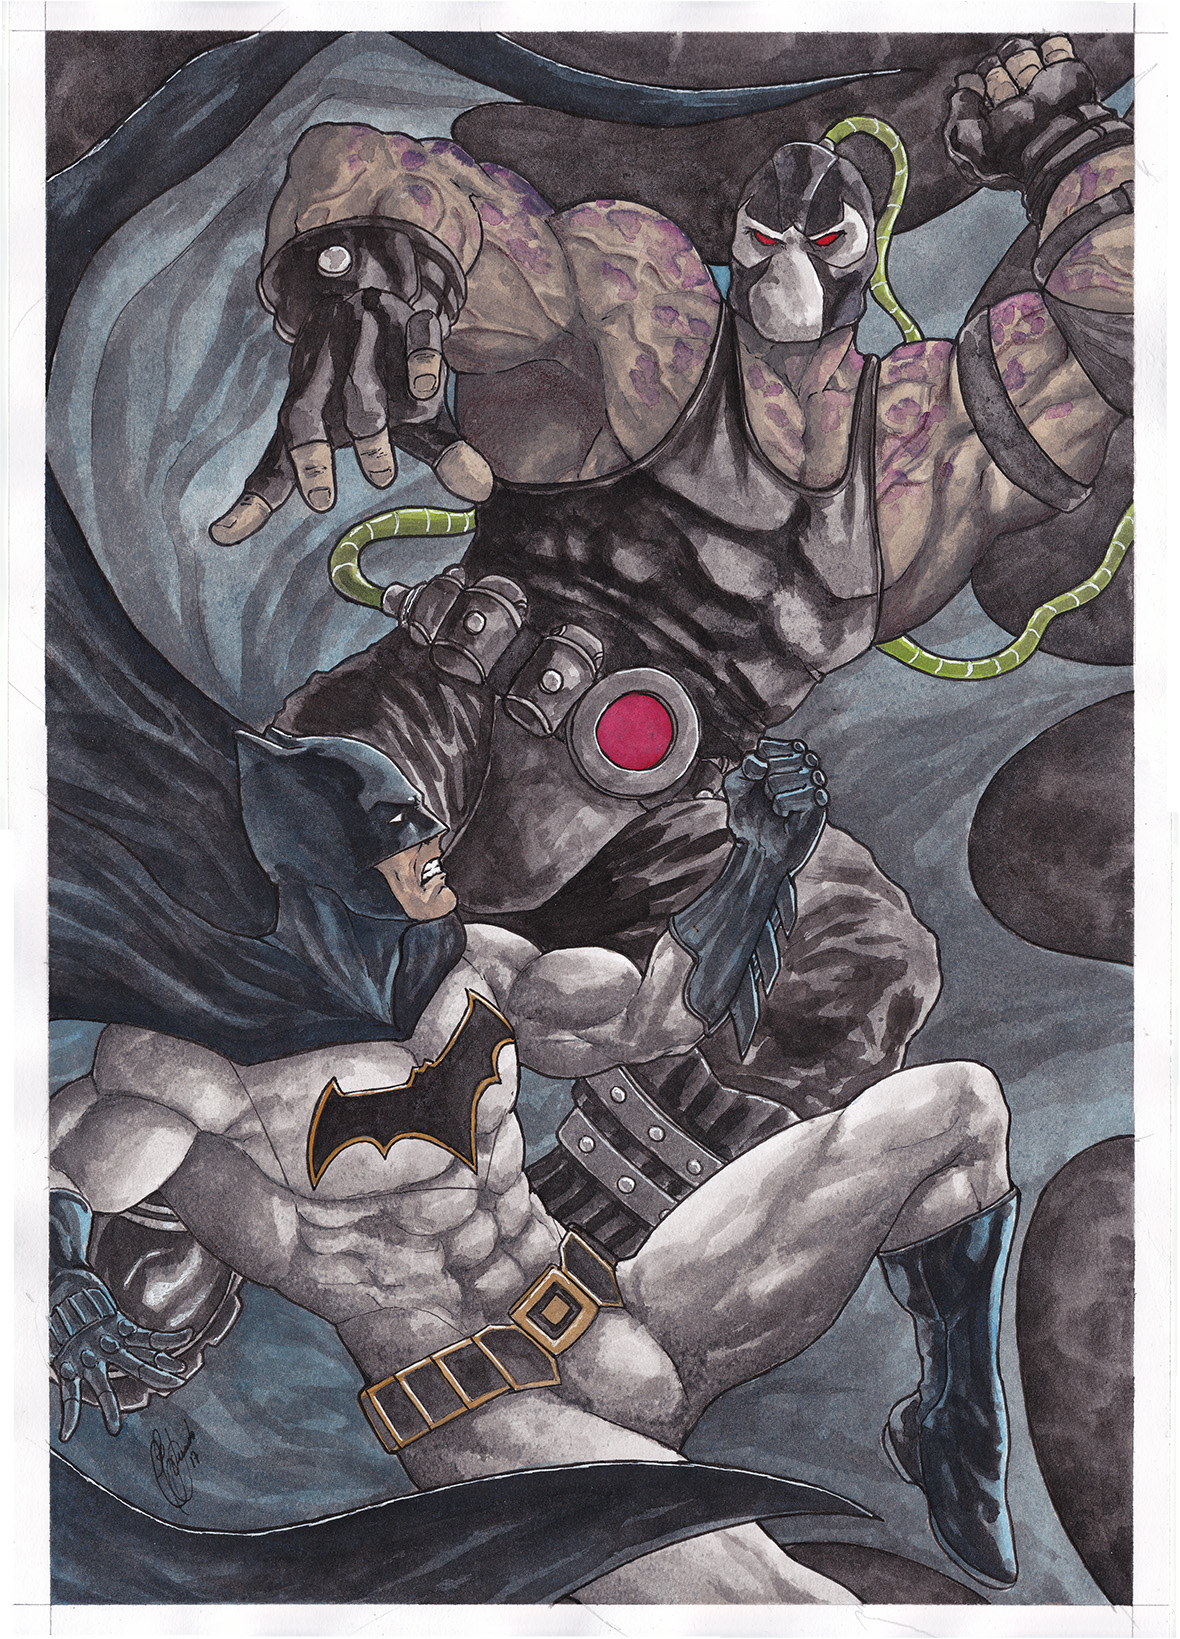 Batman Vs Bane by Ceduardocunha on DeviantArt